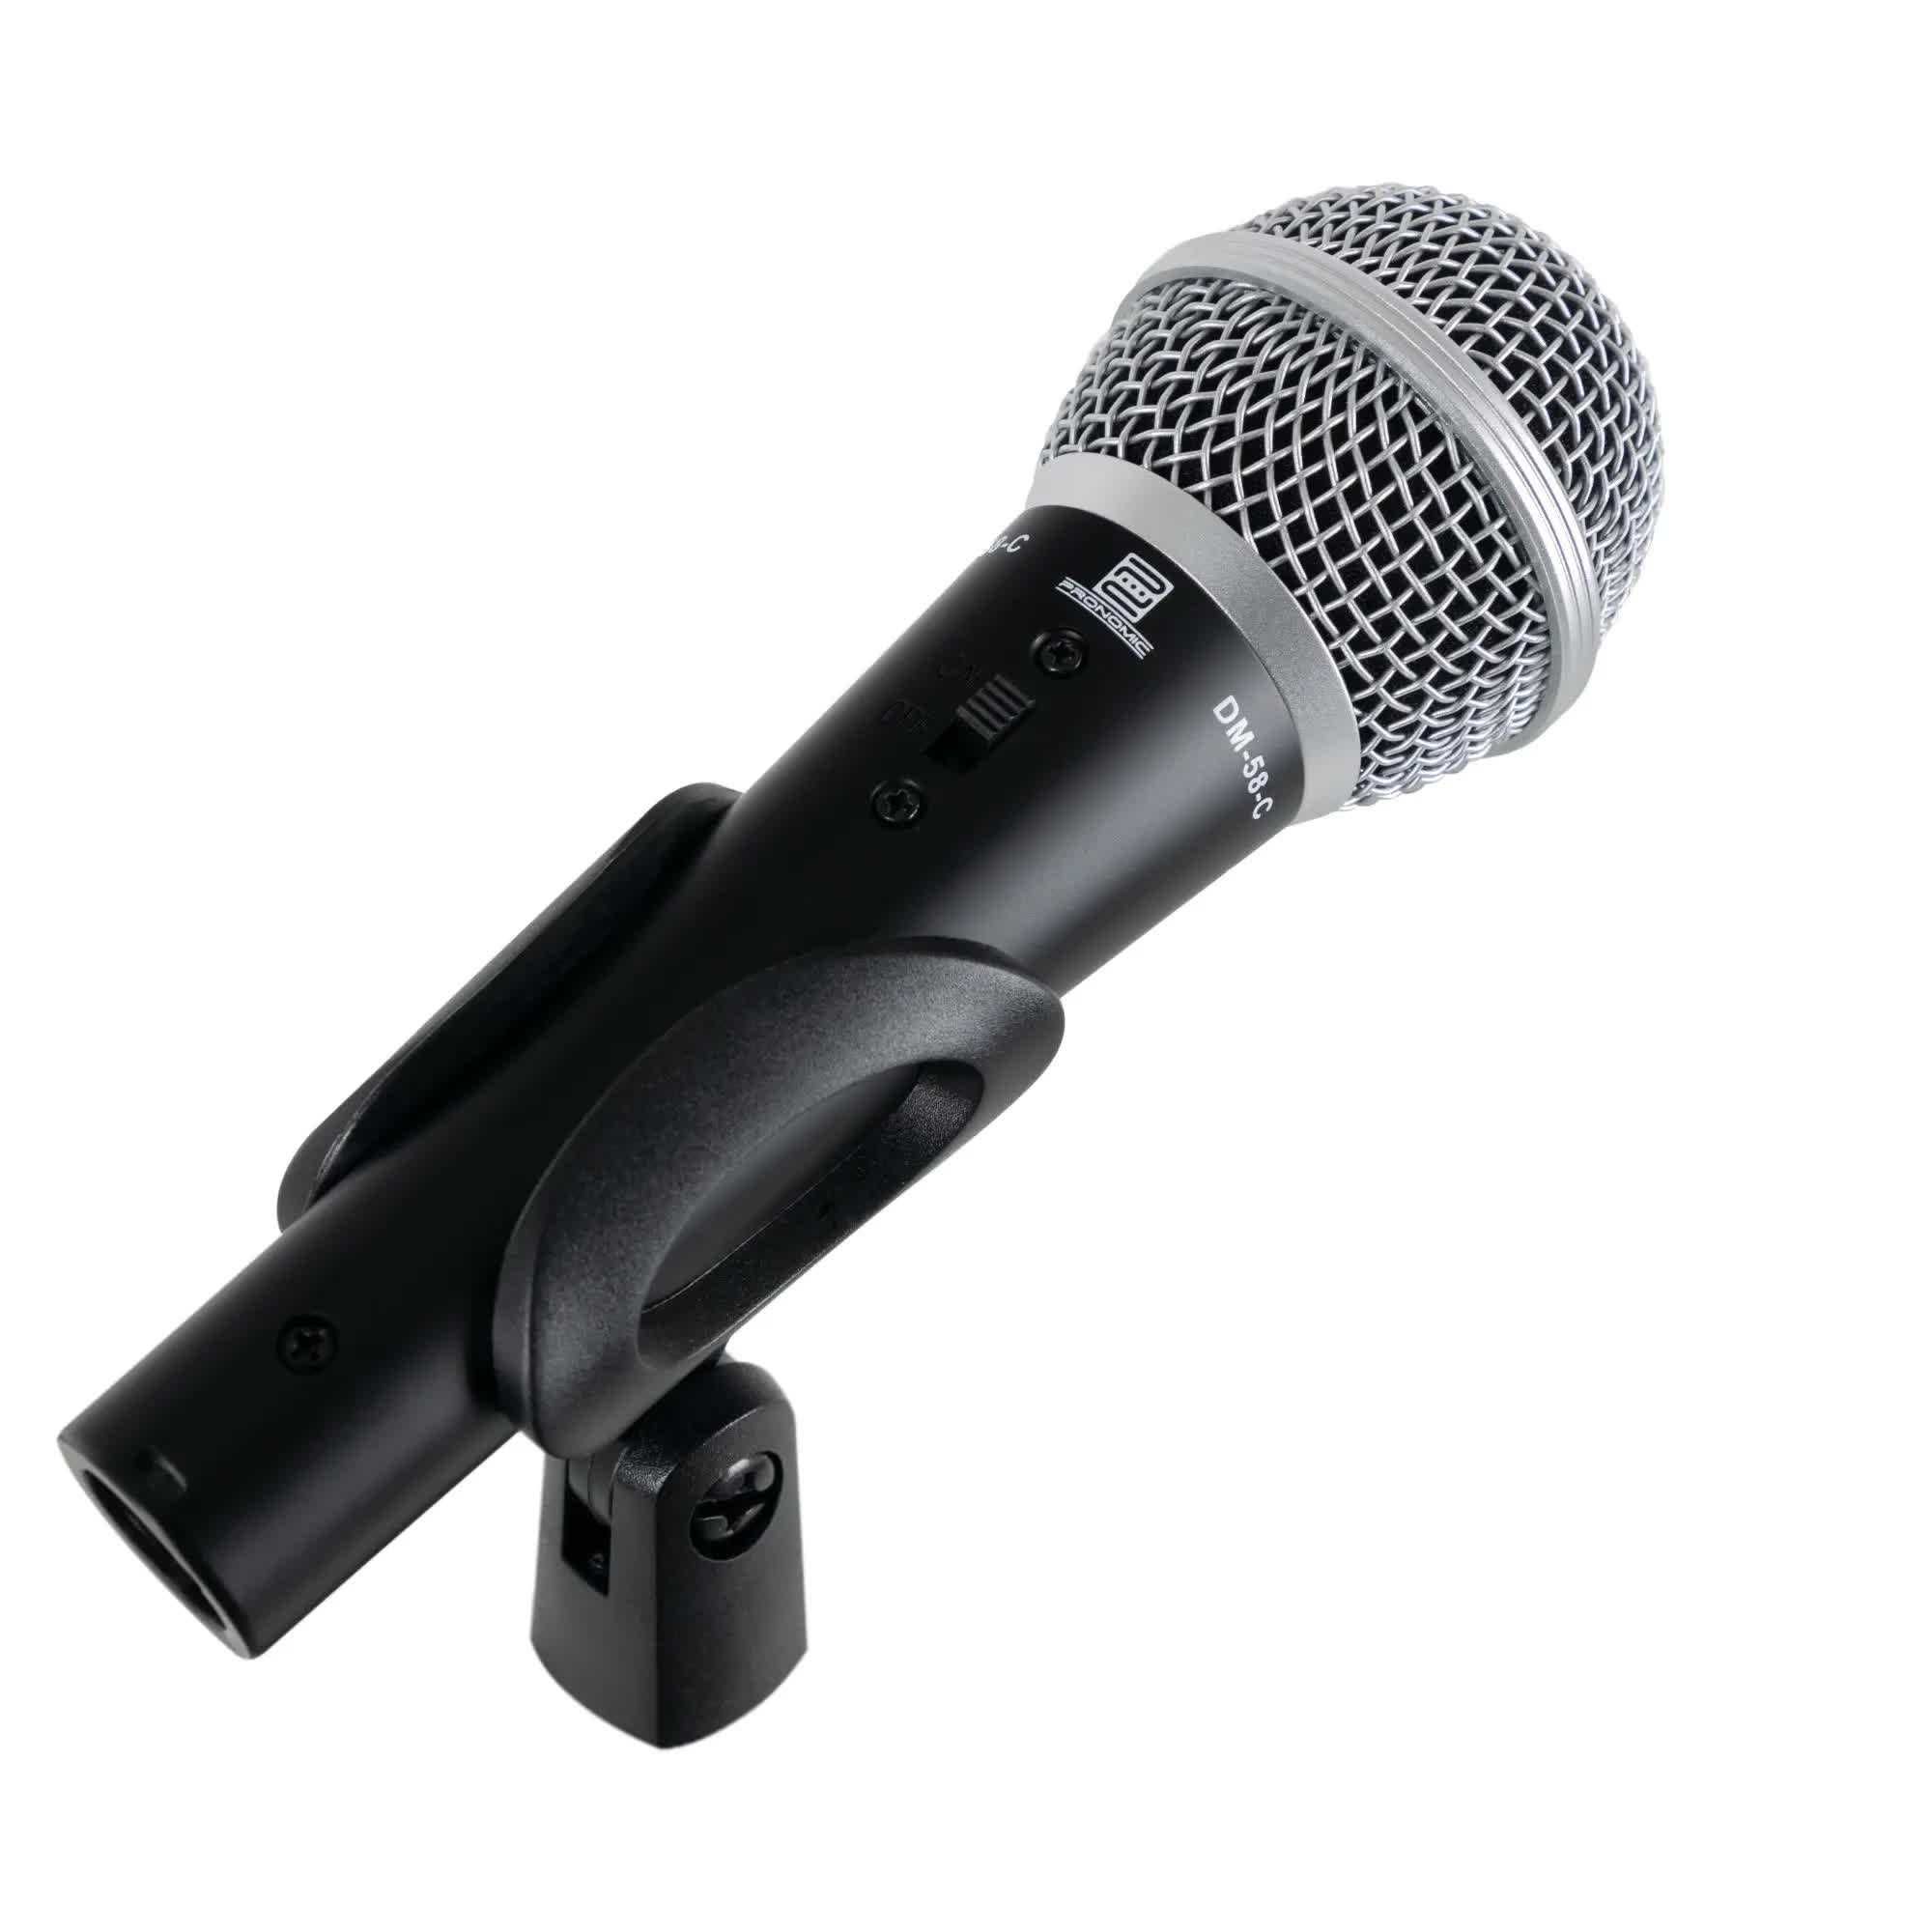 Set 3x Microfon Vocal Pronomic DM-58-C